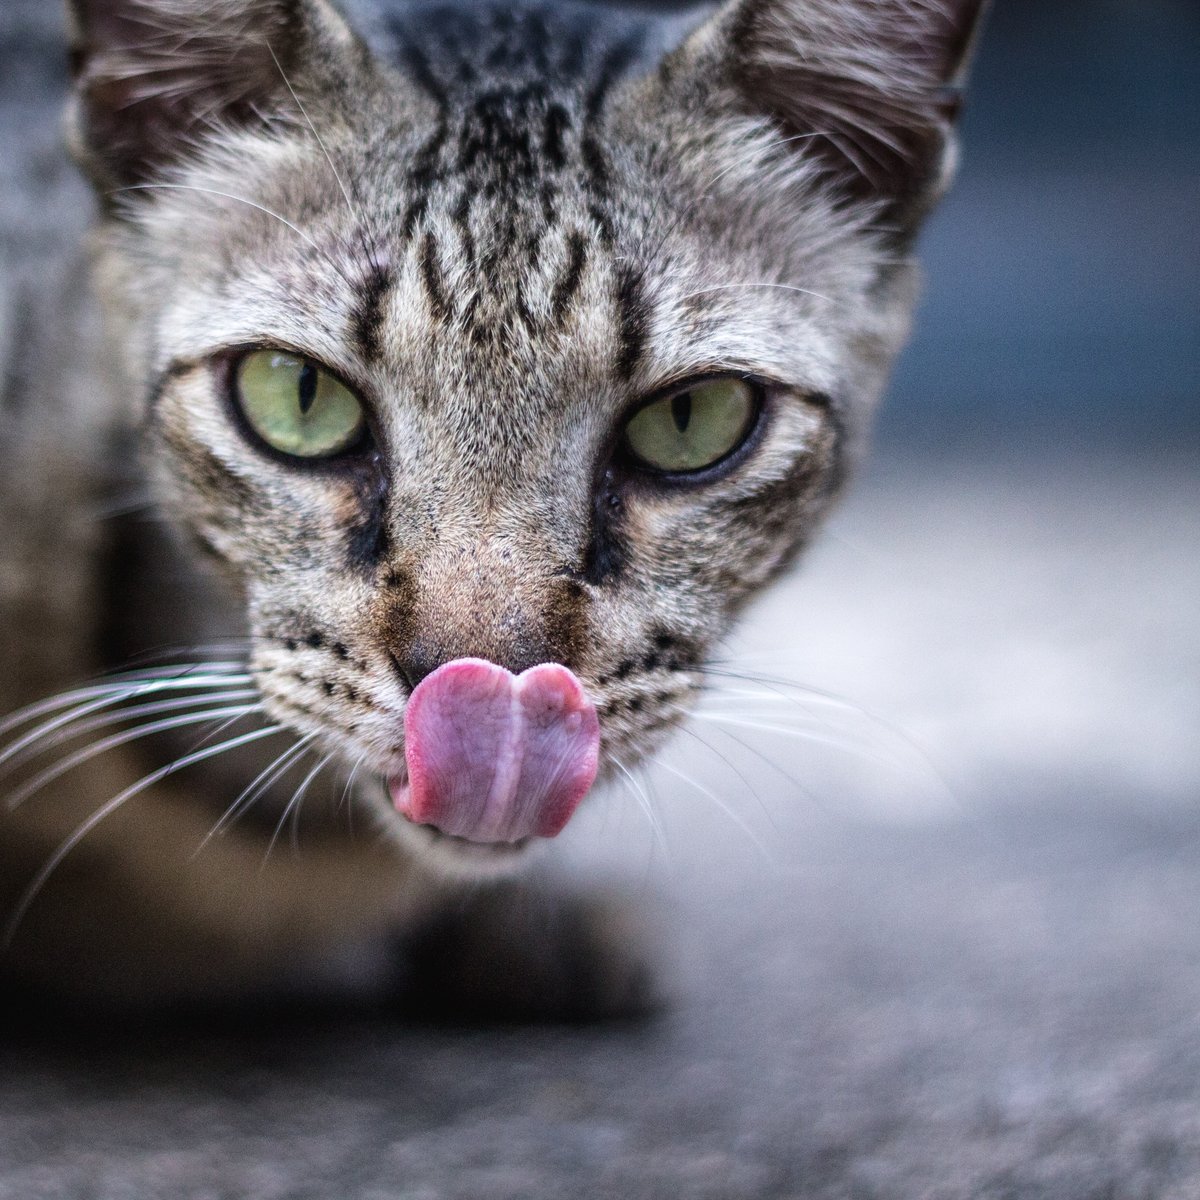 Dürfen Katzen Joghurt essen? Ein Übermaß kann schaden